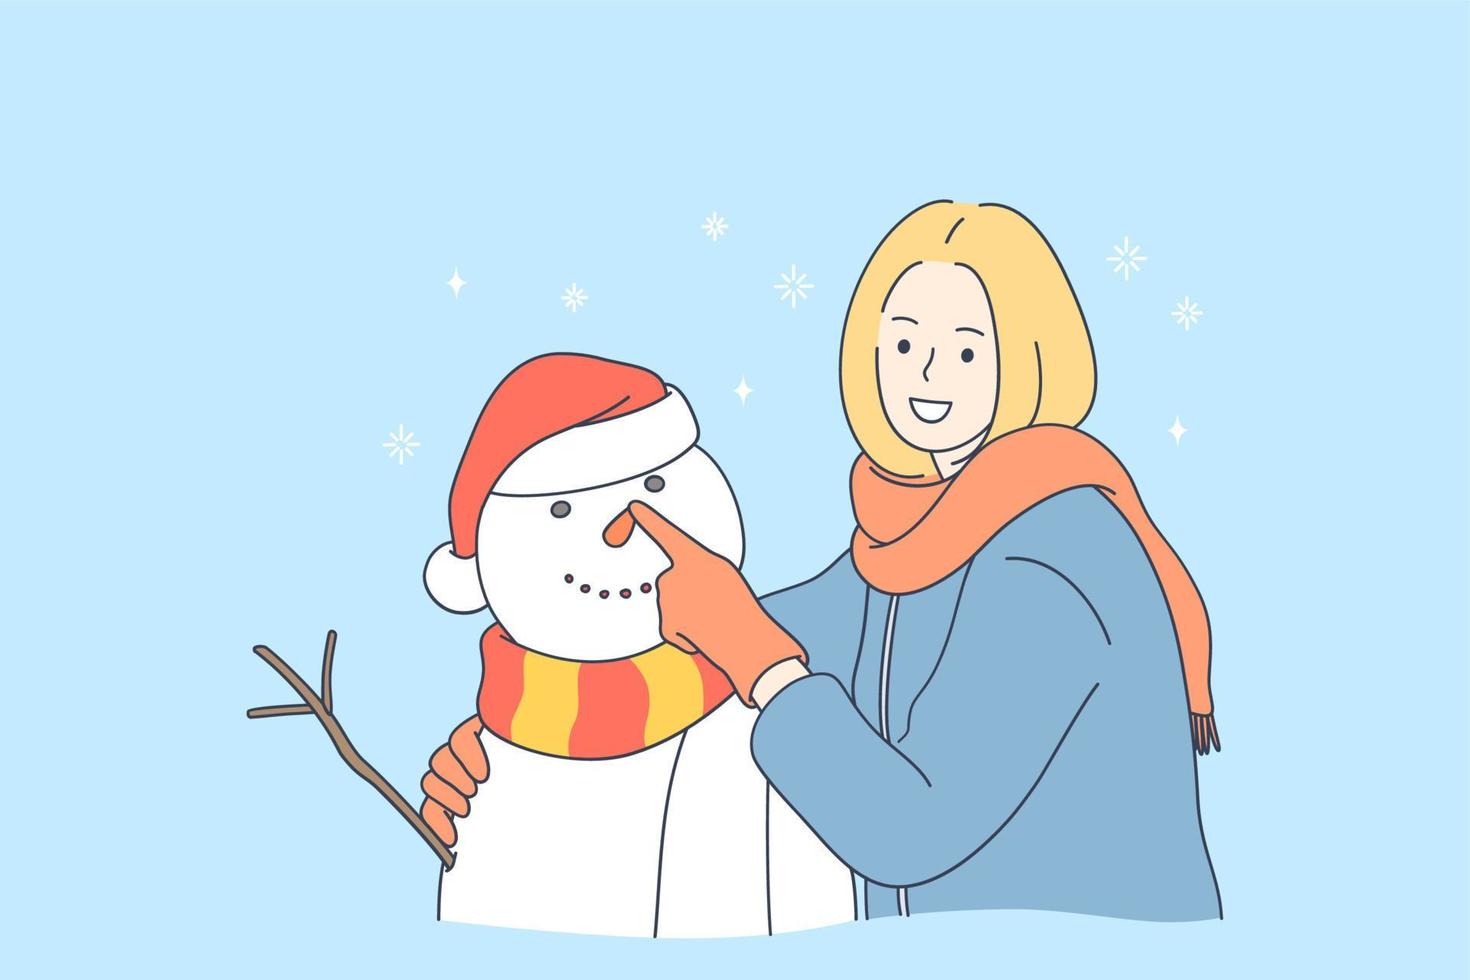 disfrutando del concepto de invierno y actividades al aire libre. joven personaje de dibujos animados de mujer sonriente haciendo muñeco de nieve y disfrutando del invierno con nieve al aire libre ilustración vectorial vector